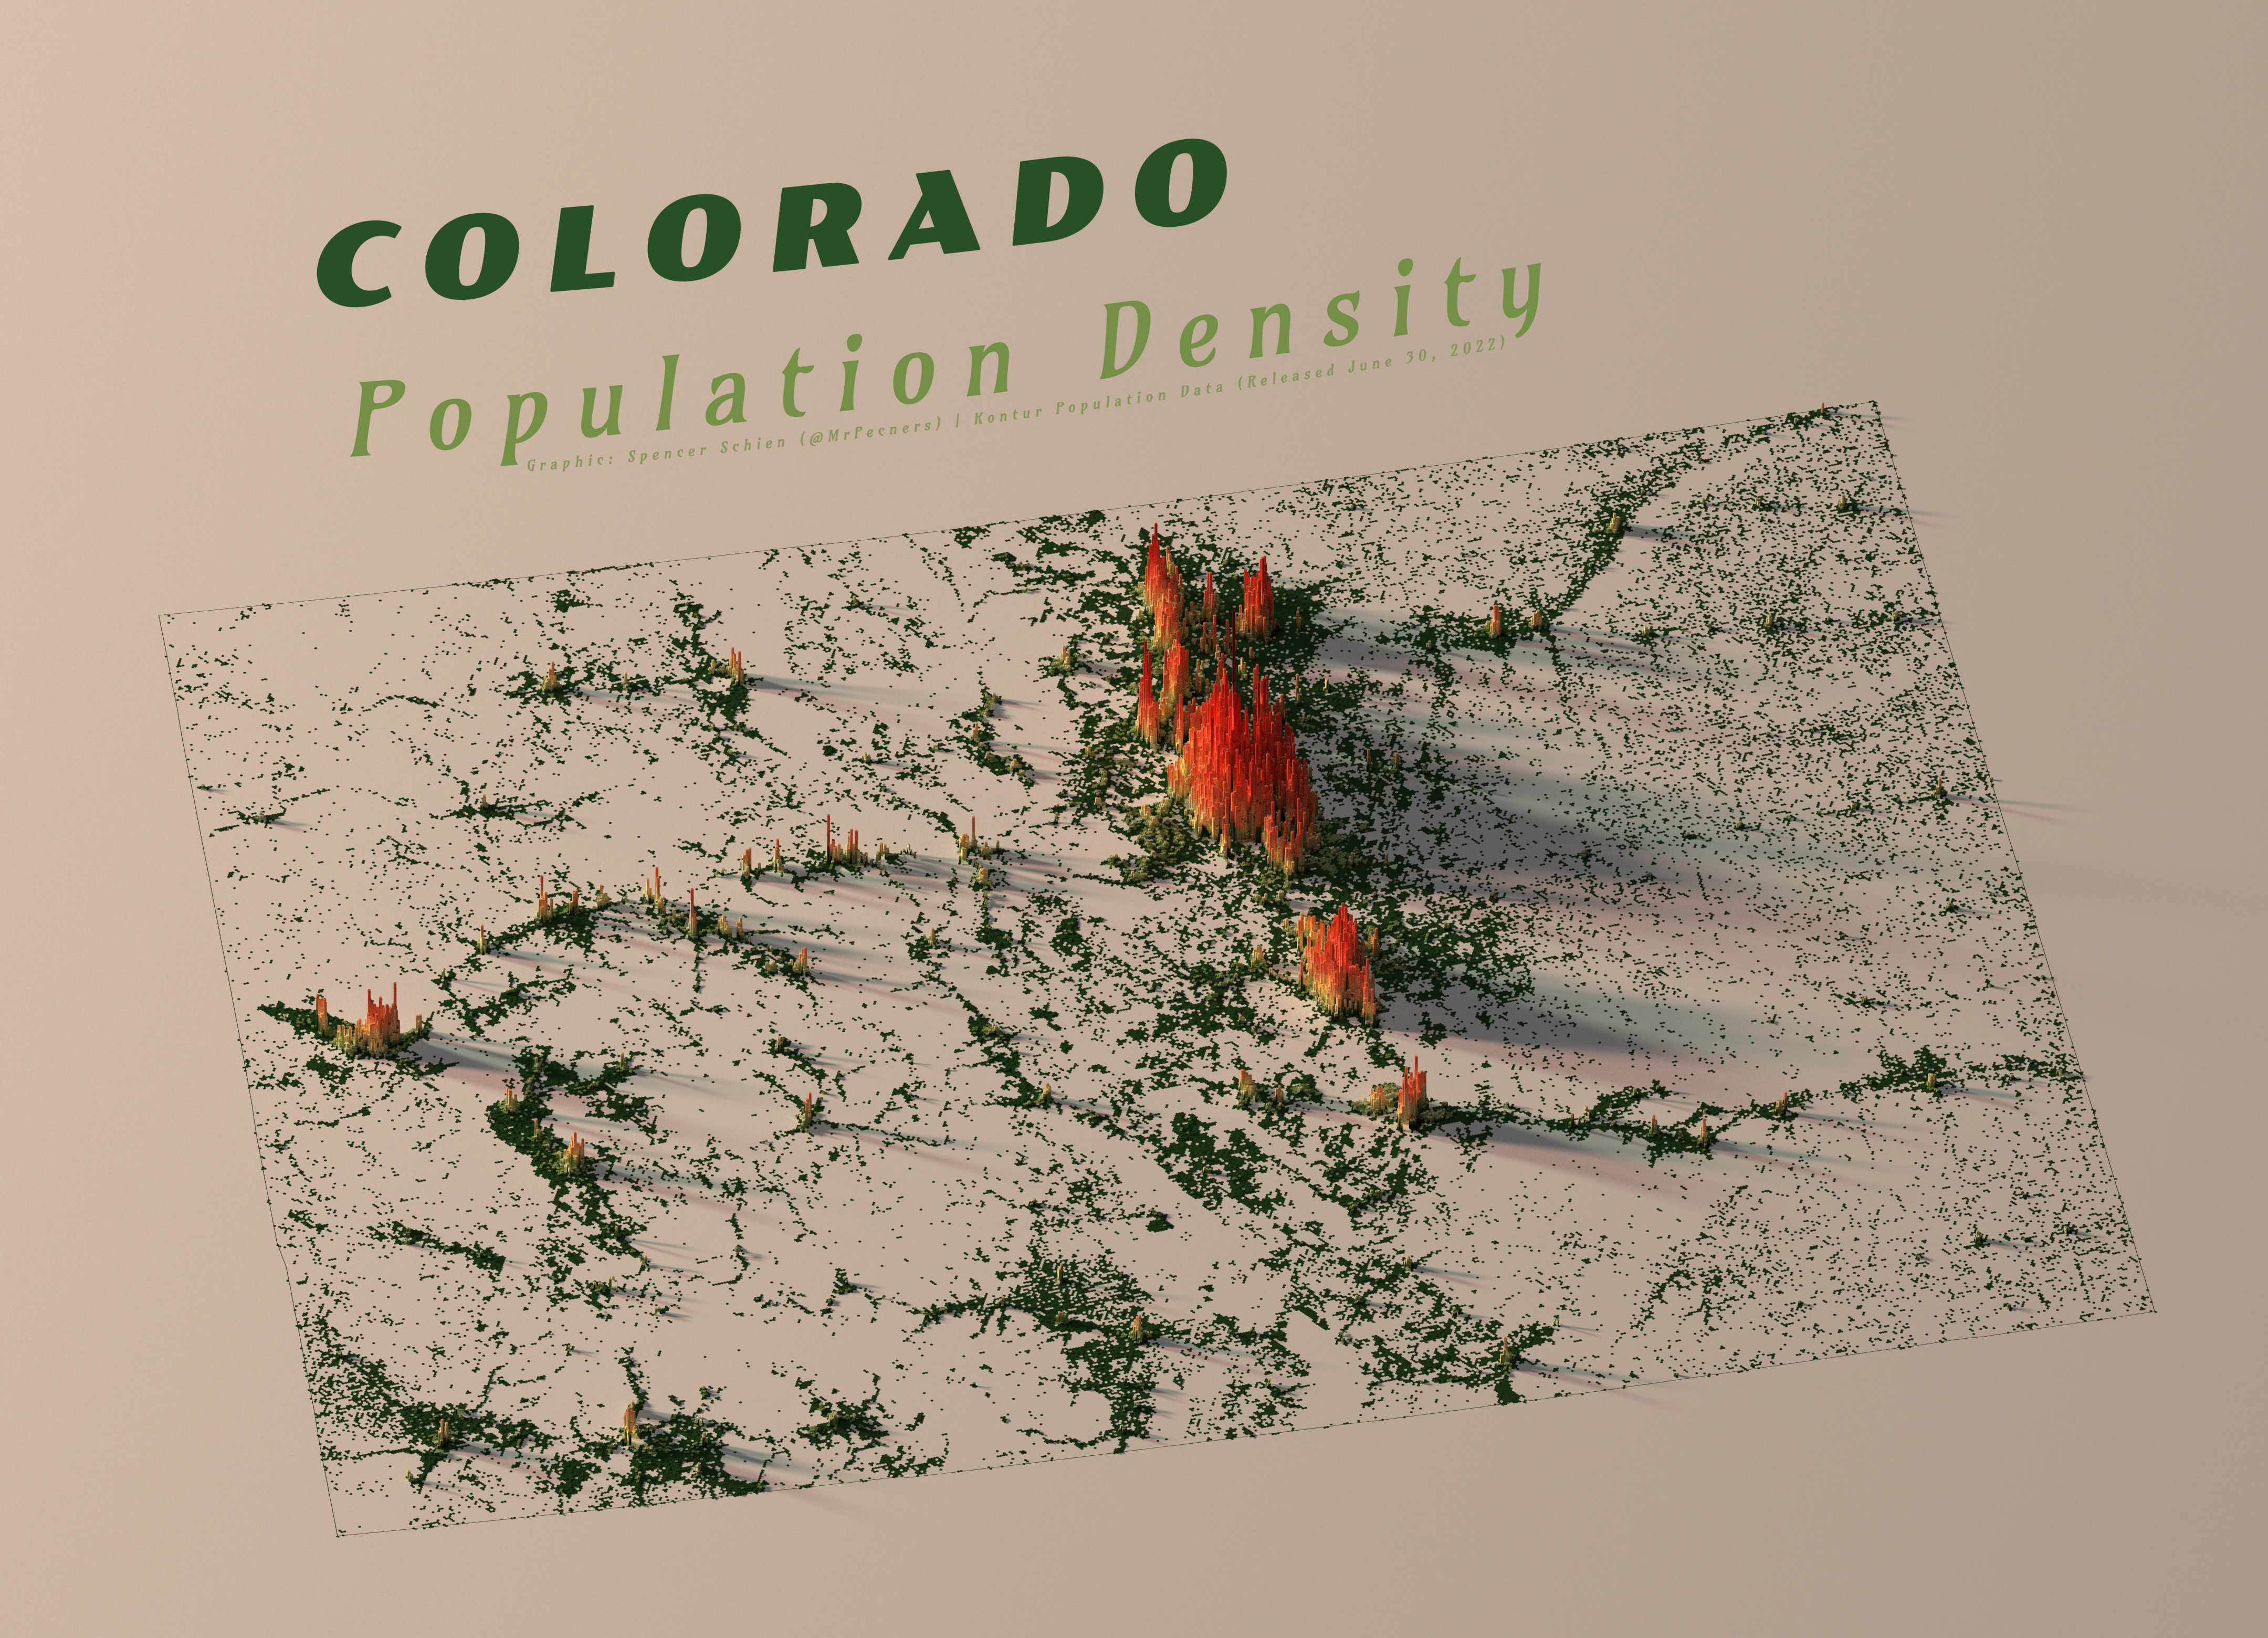 Colorado Population Density